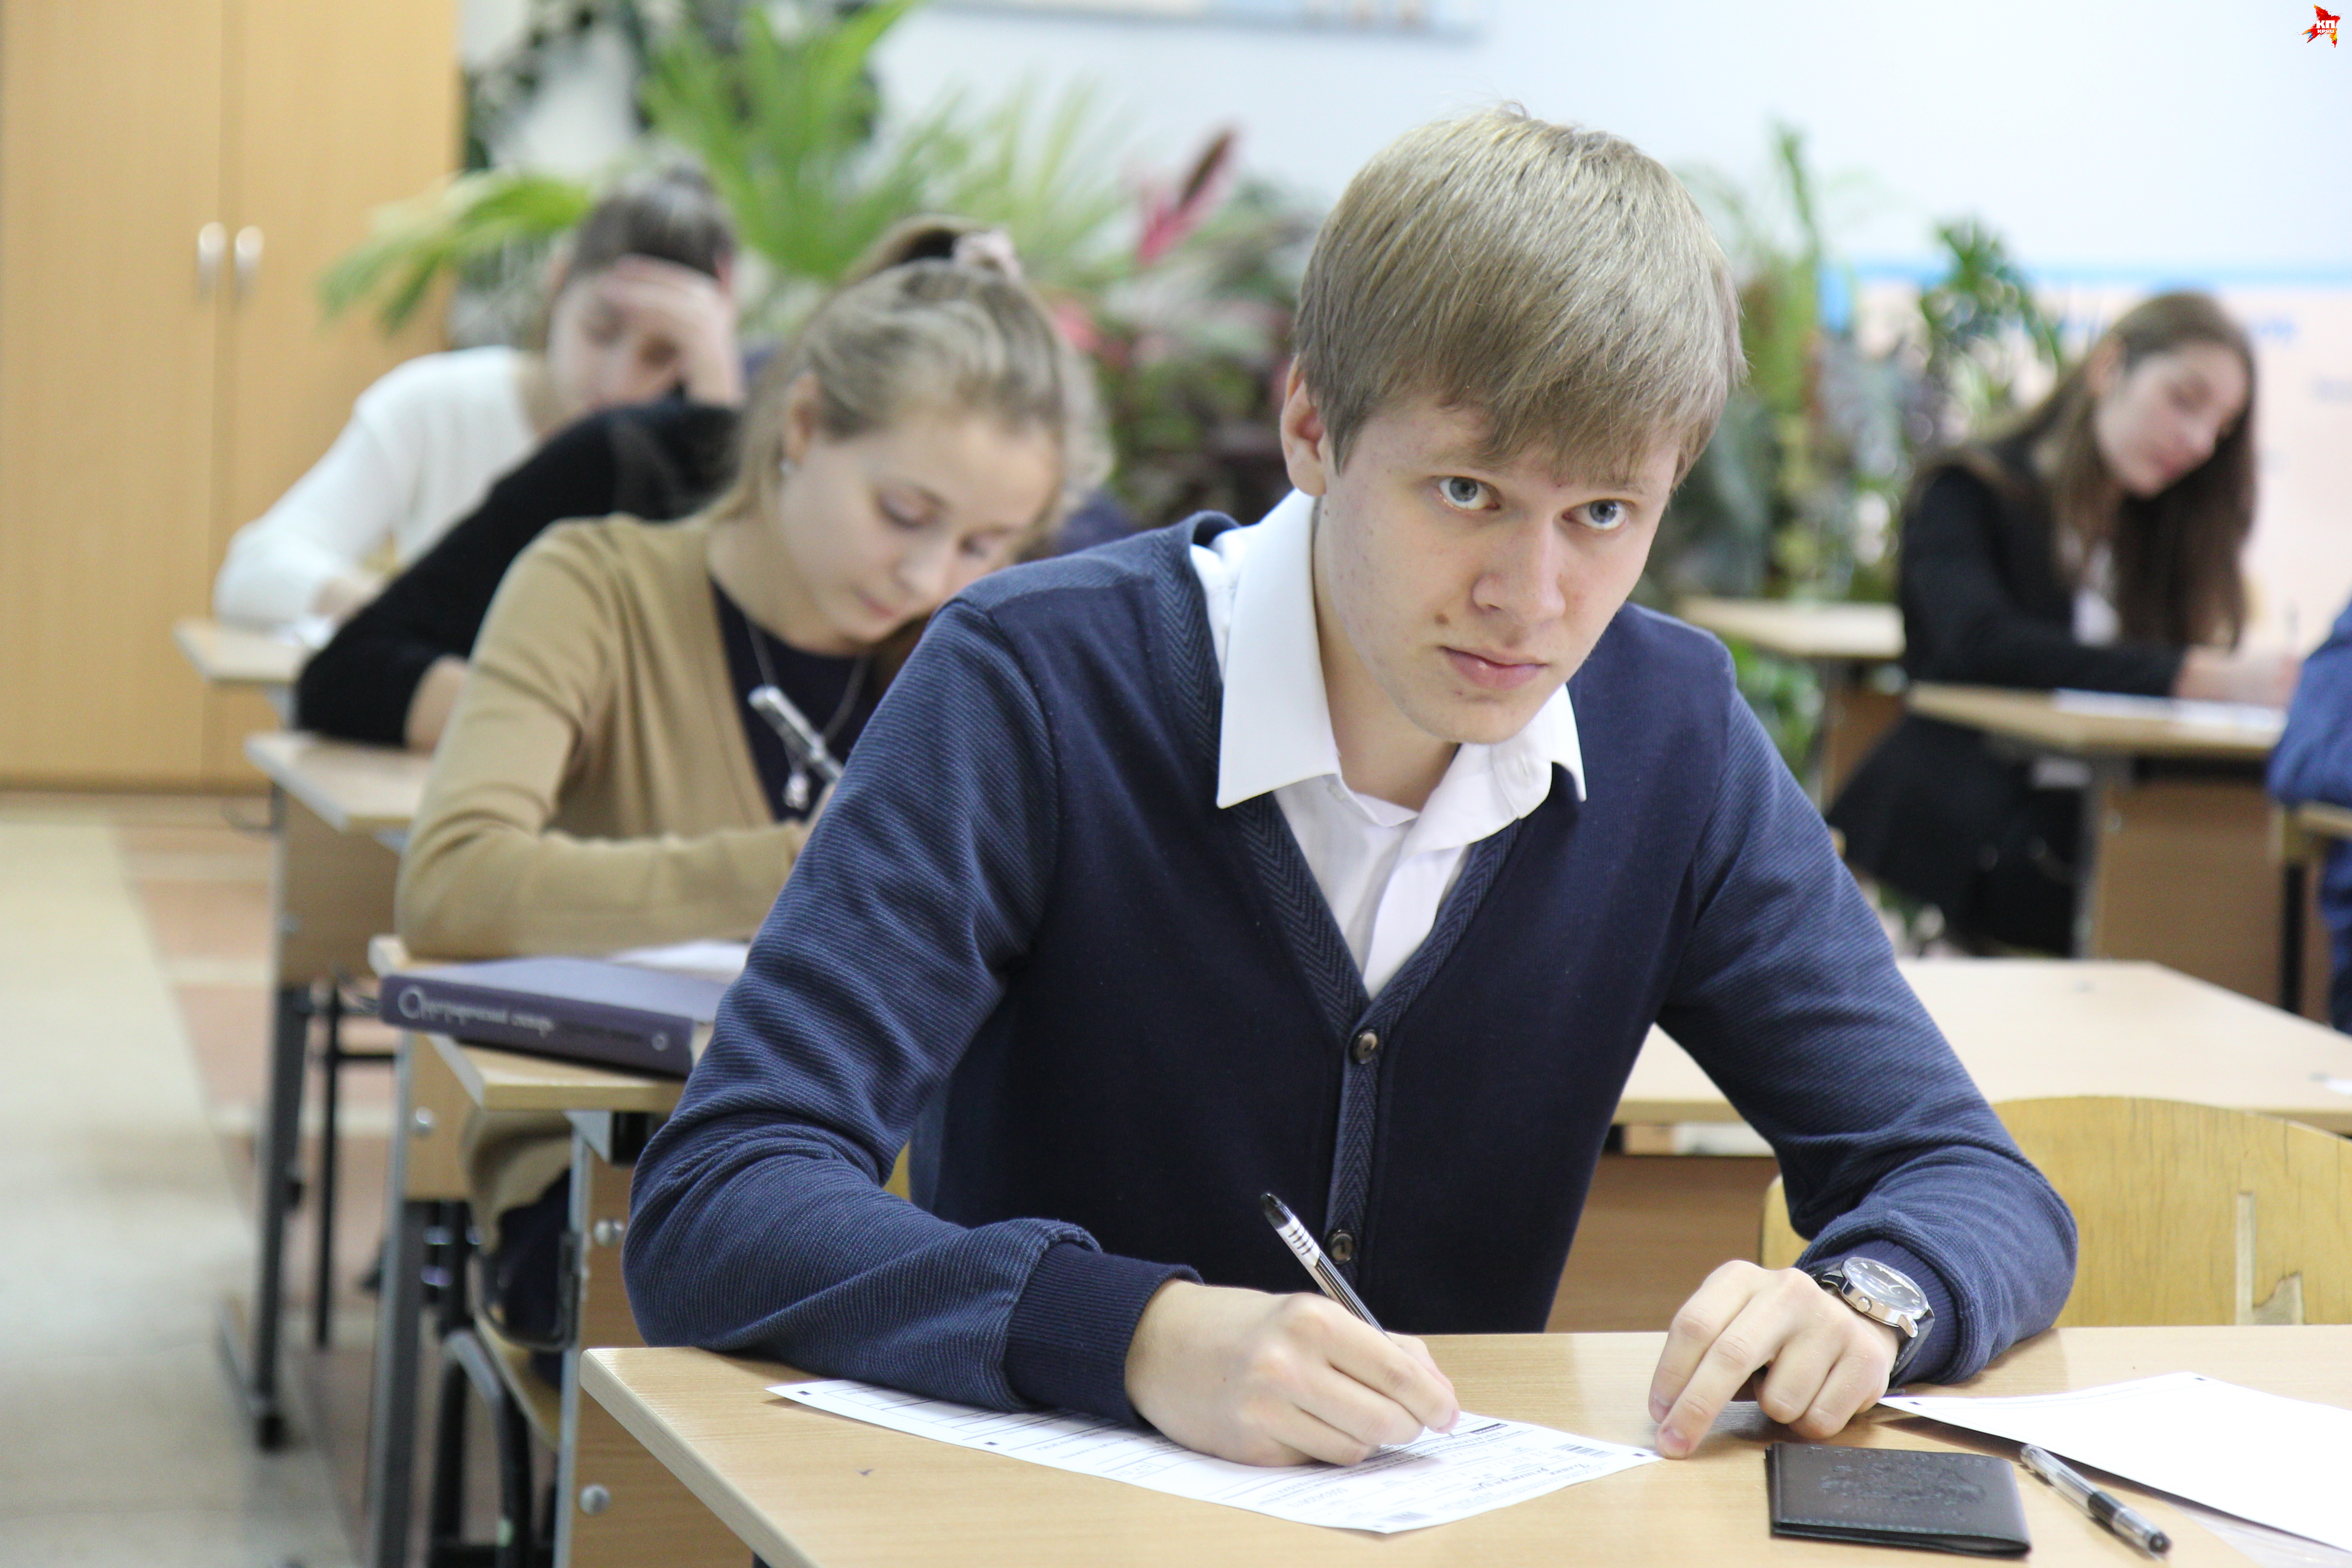 ЕГЭ-2015: больше половины иркутских школьников хотят лучше сдать экзамены, чтобы уехать из региона навсегда